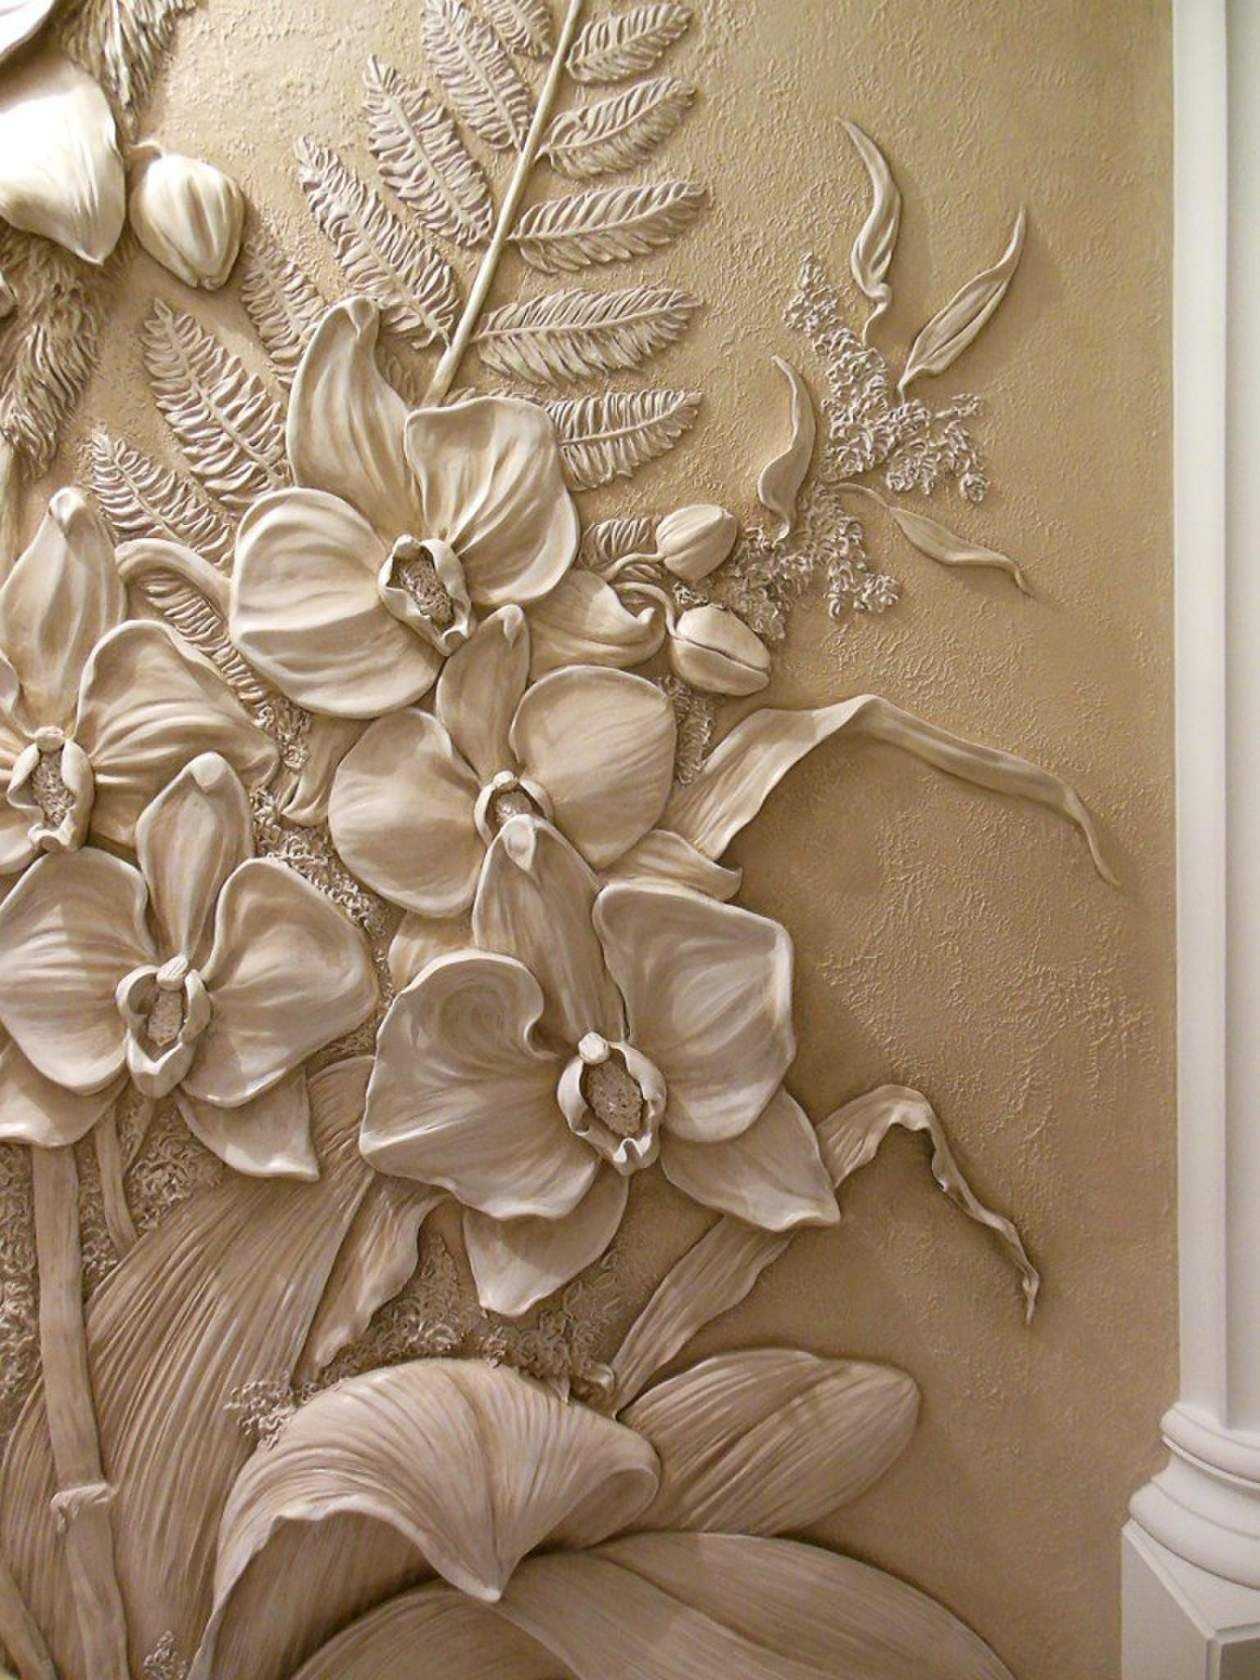 Декор предметов интерьер рисование и живопись создание рельефных рисунков на стене шпатлевкой гипс цемент